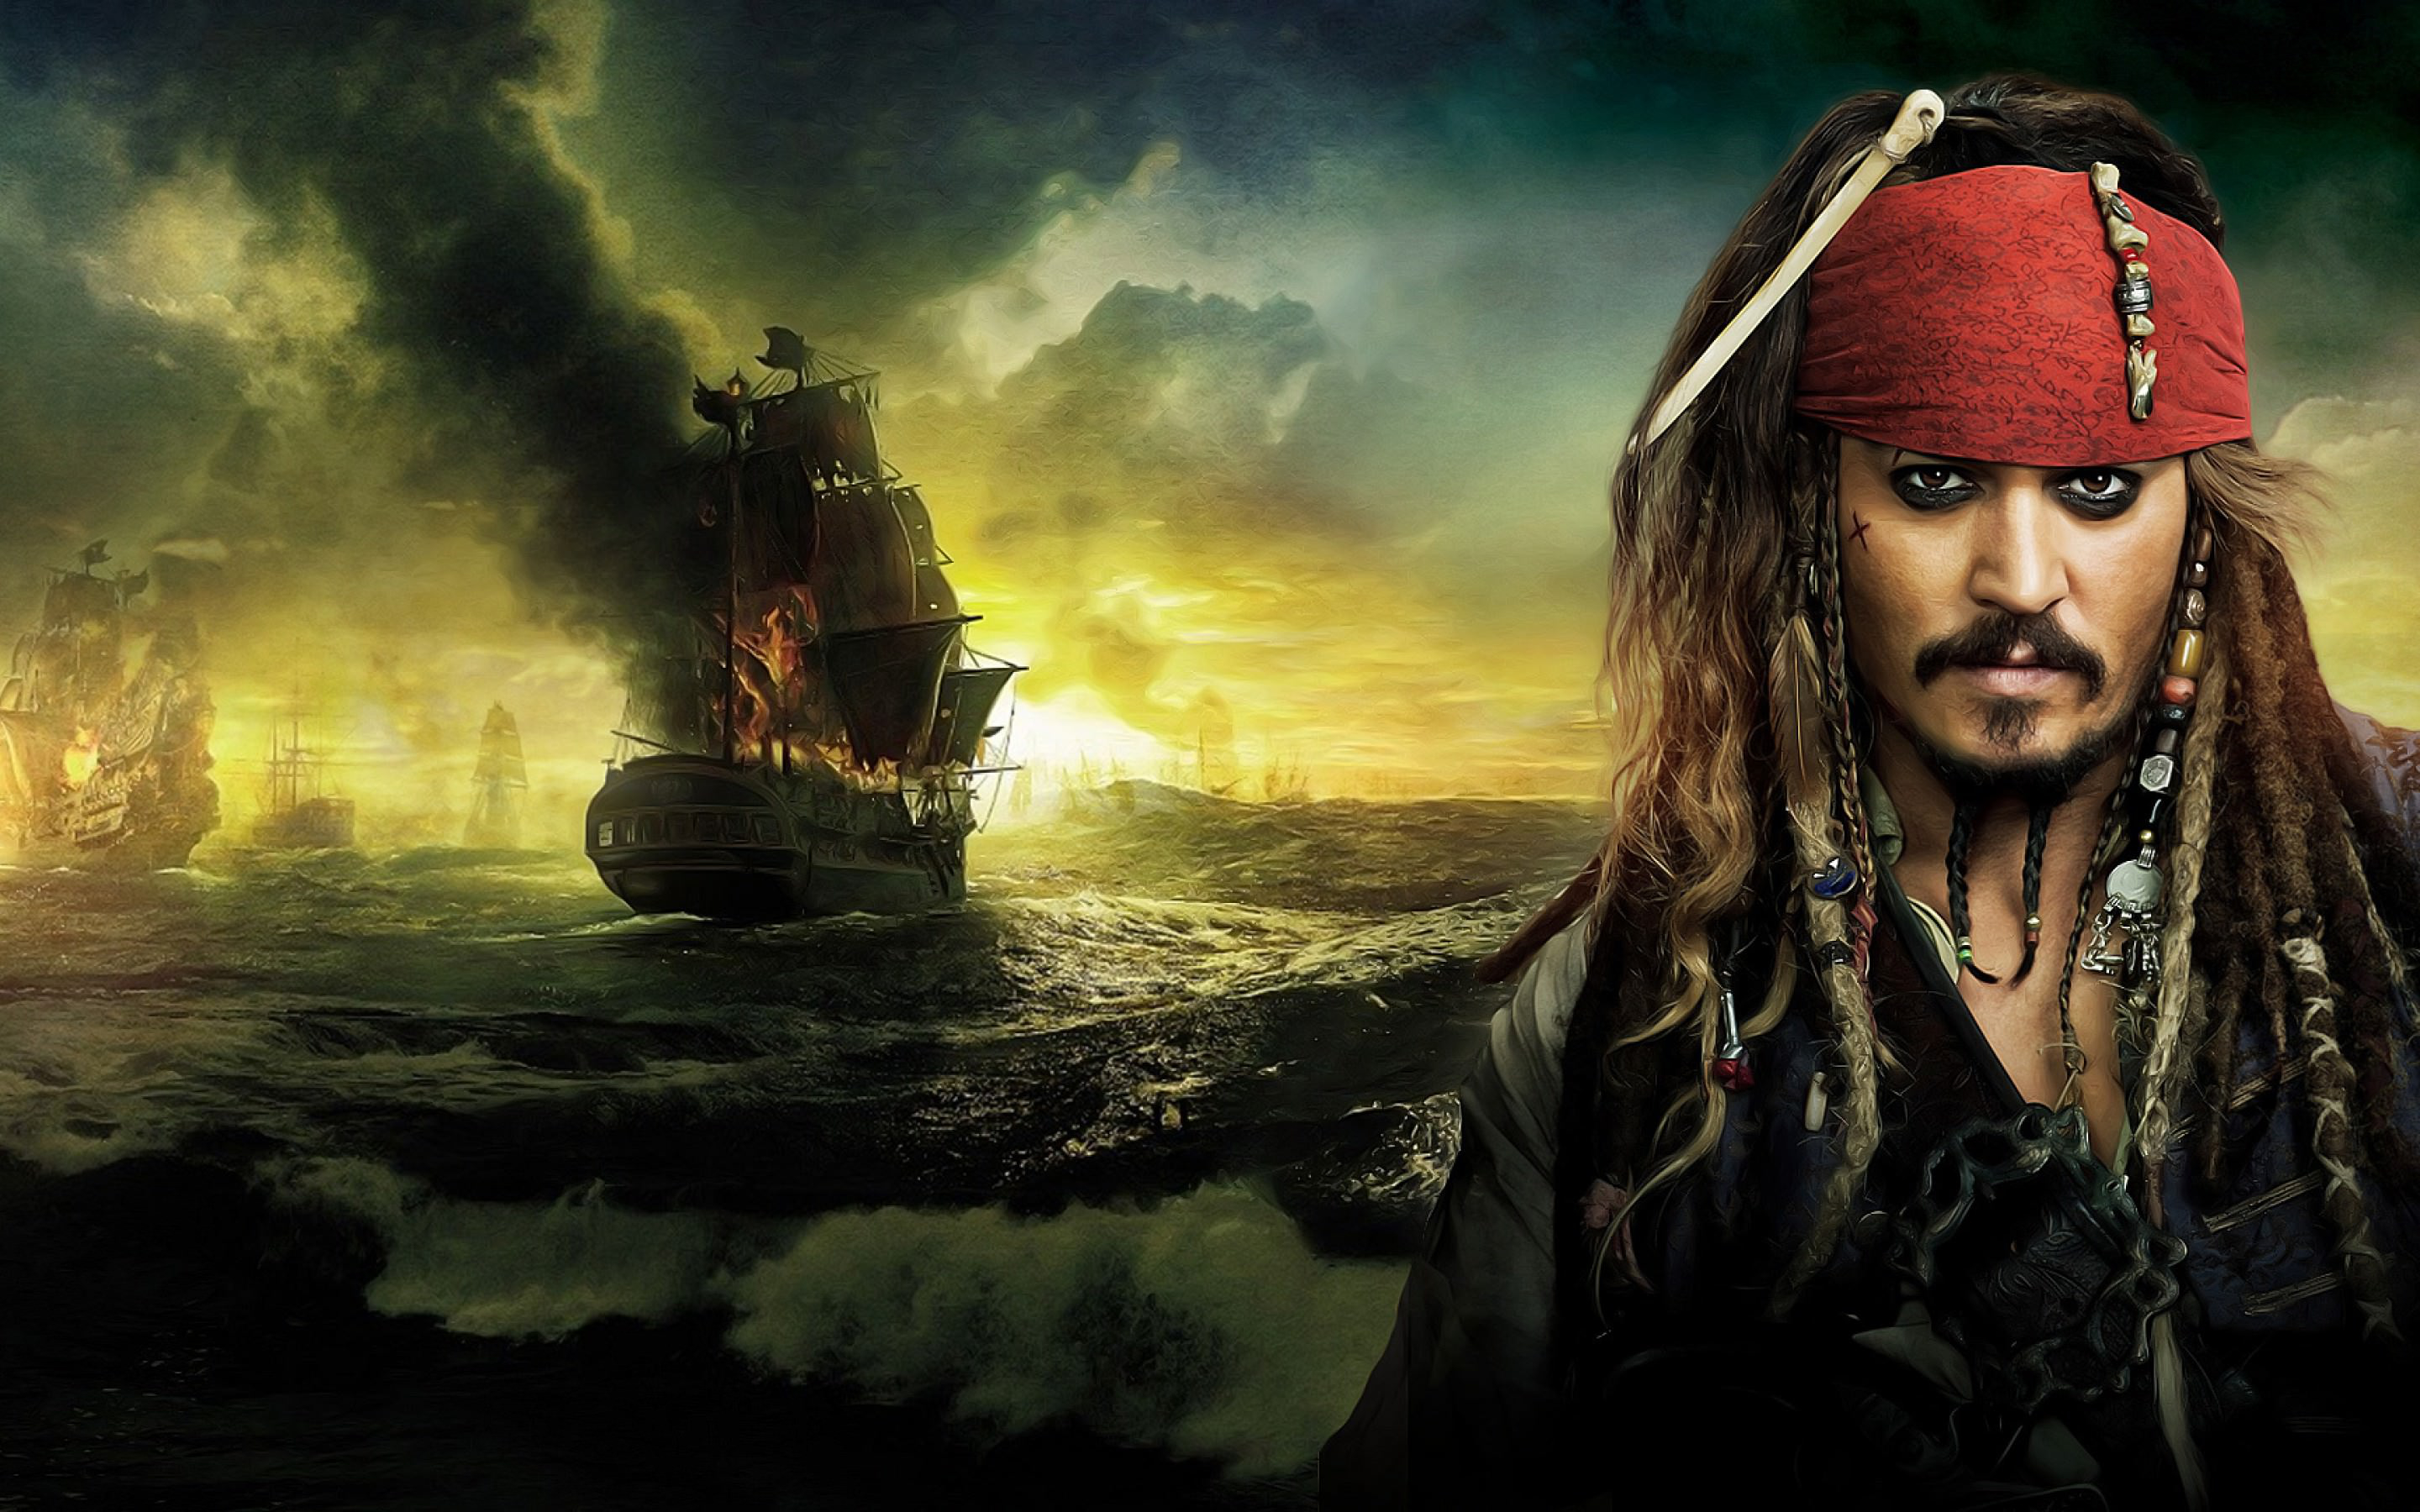 Pirates des Caraïbes: La Fontaine de jouvence Fond d'écran ...